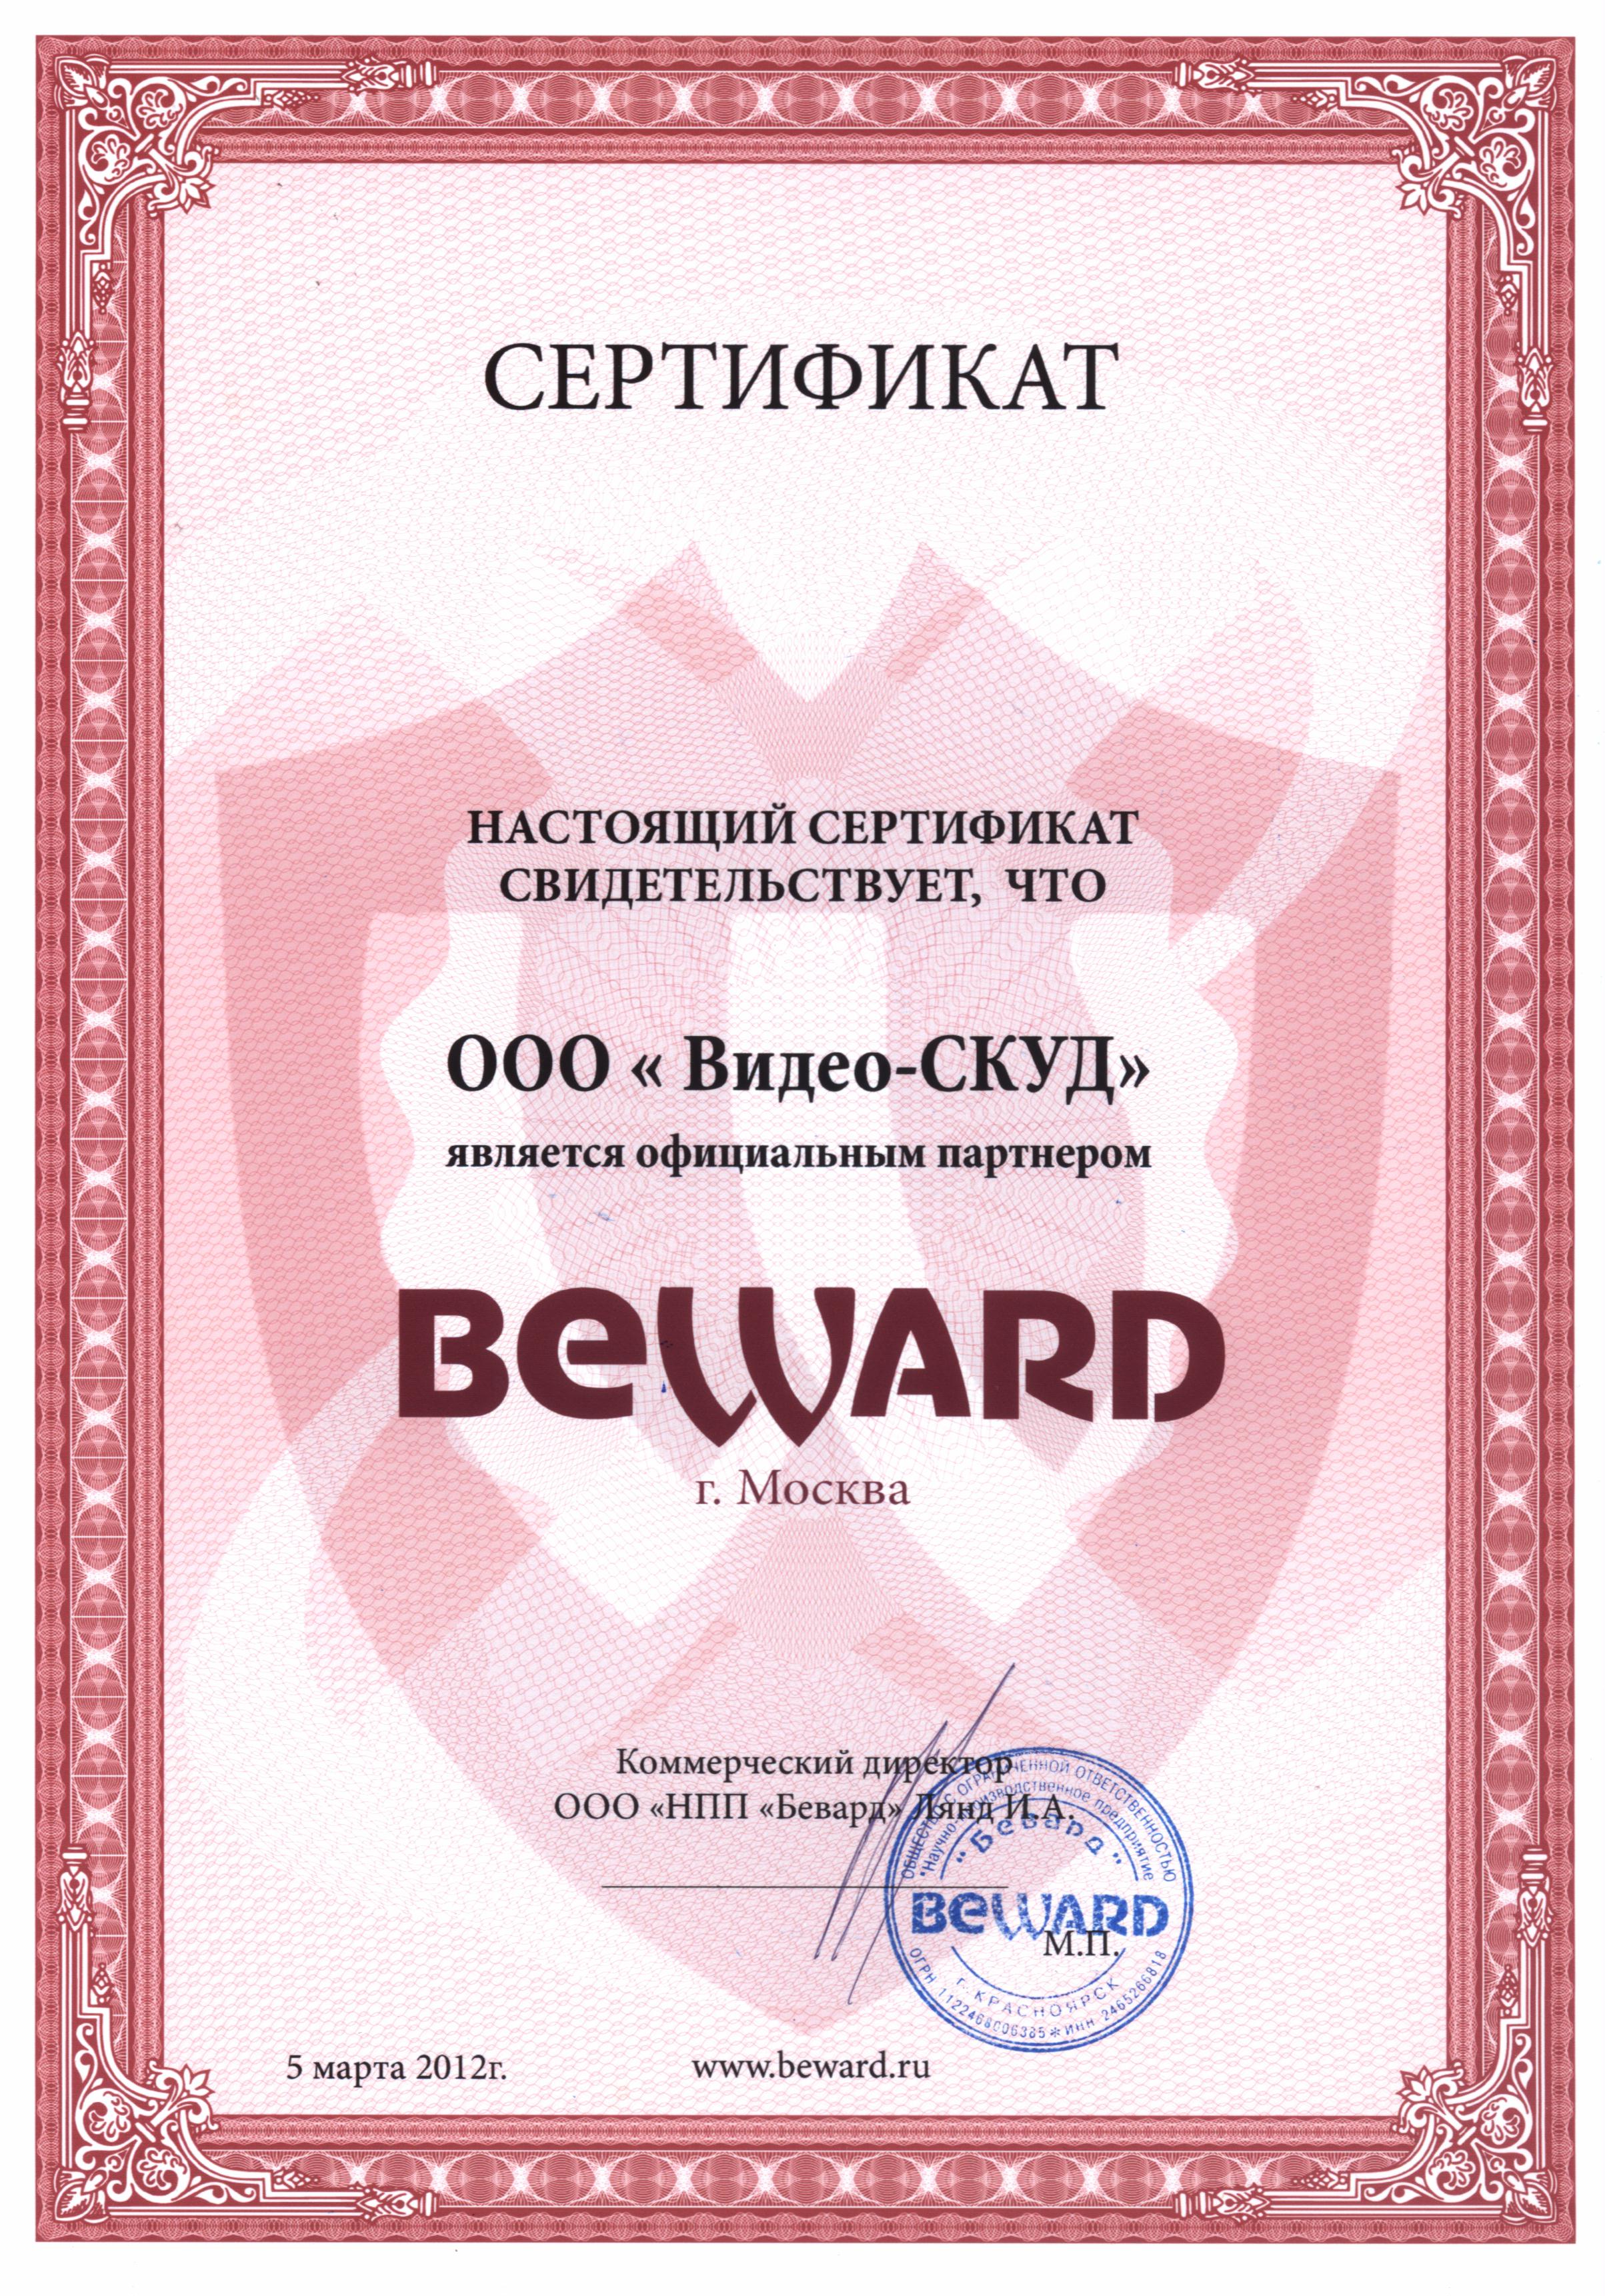 Сертификат о партнёрстве с ООО НПП Бевард